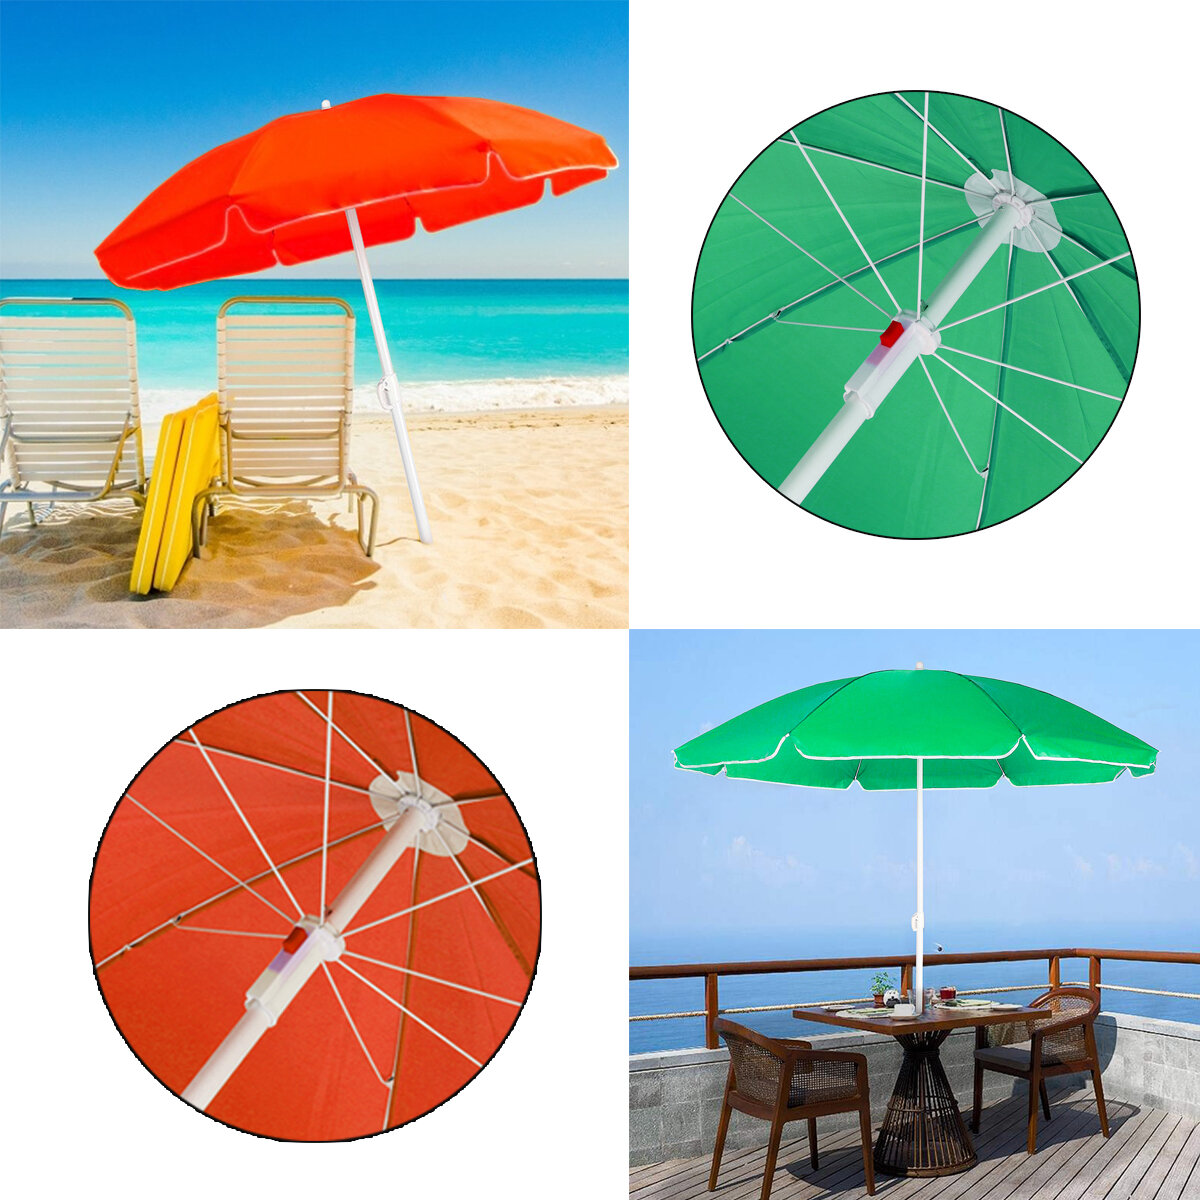 مظلة شاطئ محمولة بقطر 1.8 متر وكرسي شاطئ وشمسية وحماية من الأشعة فوق البنفسجية وسند للتثبيت.